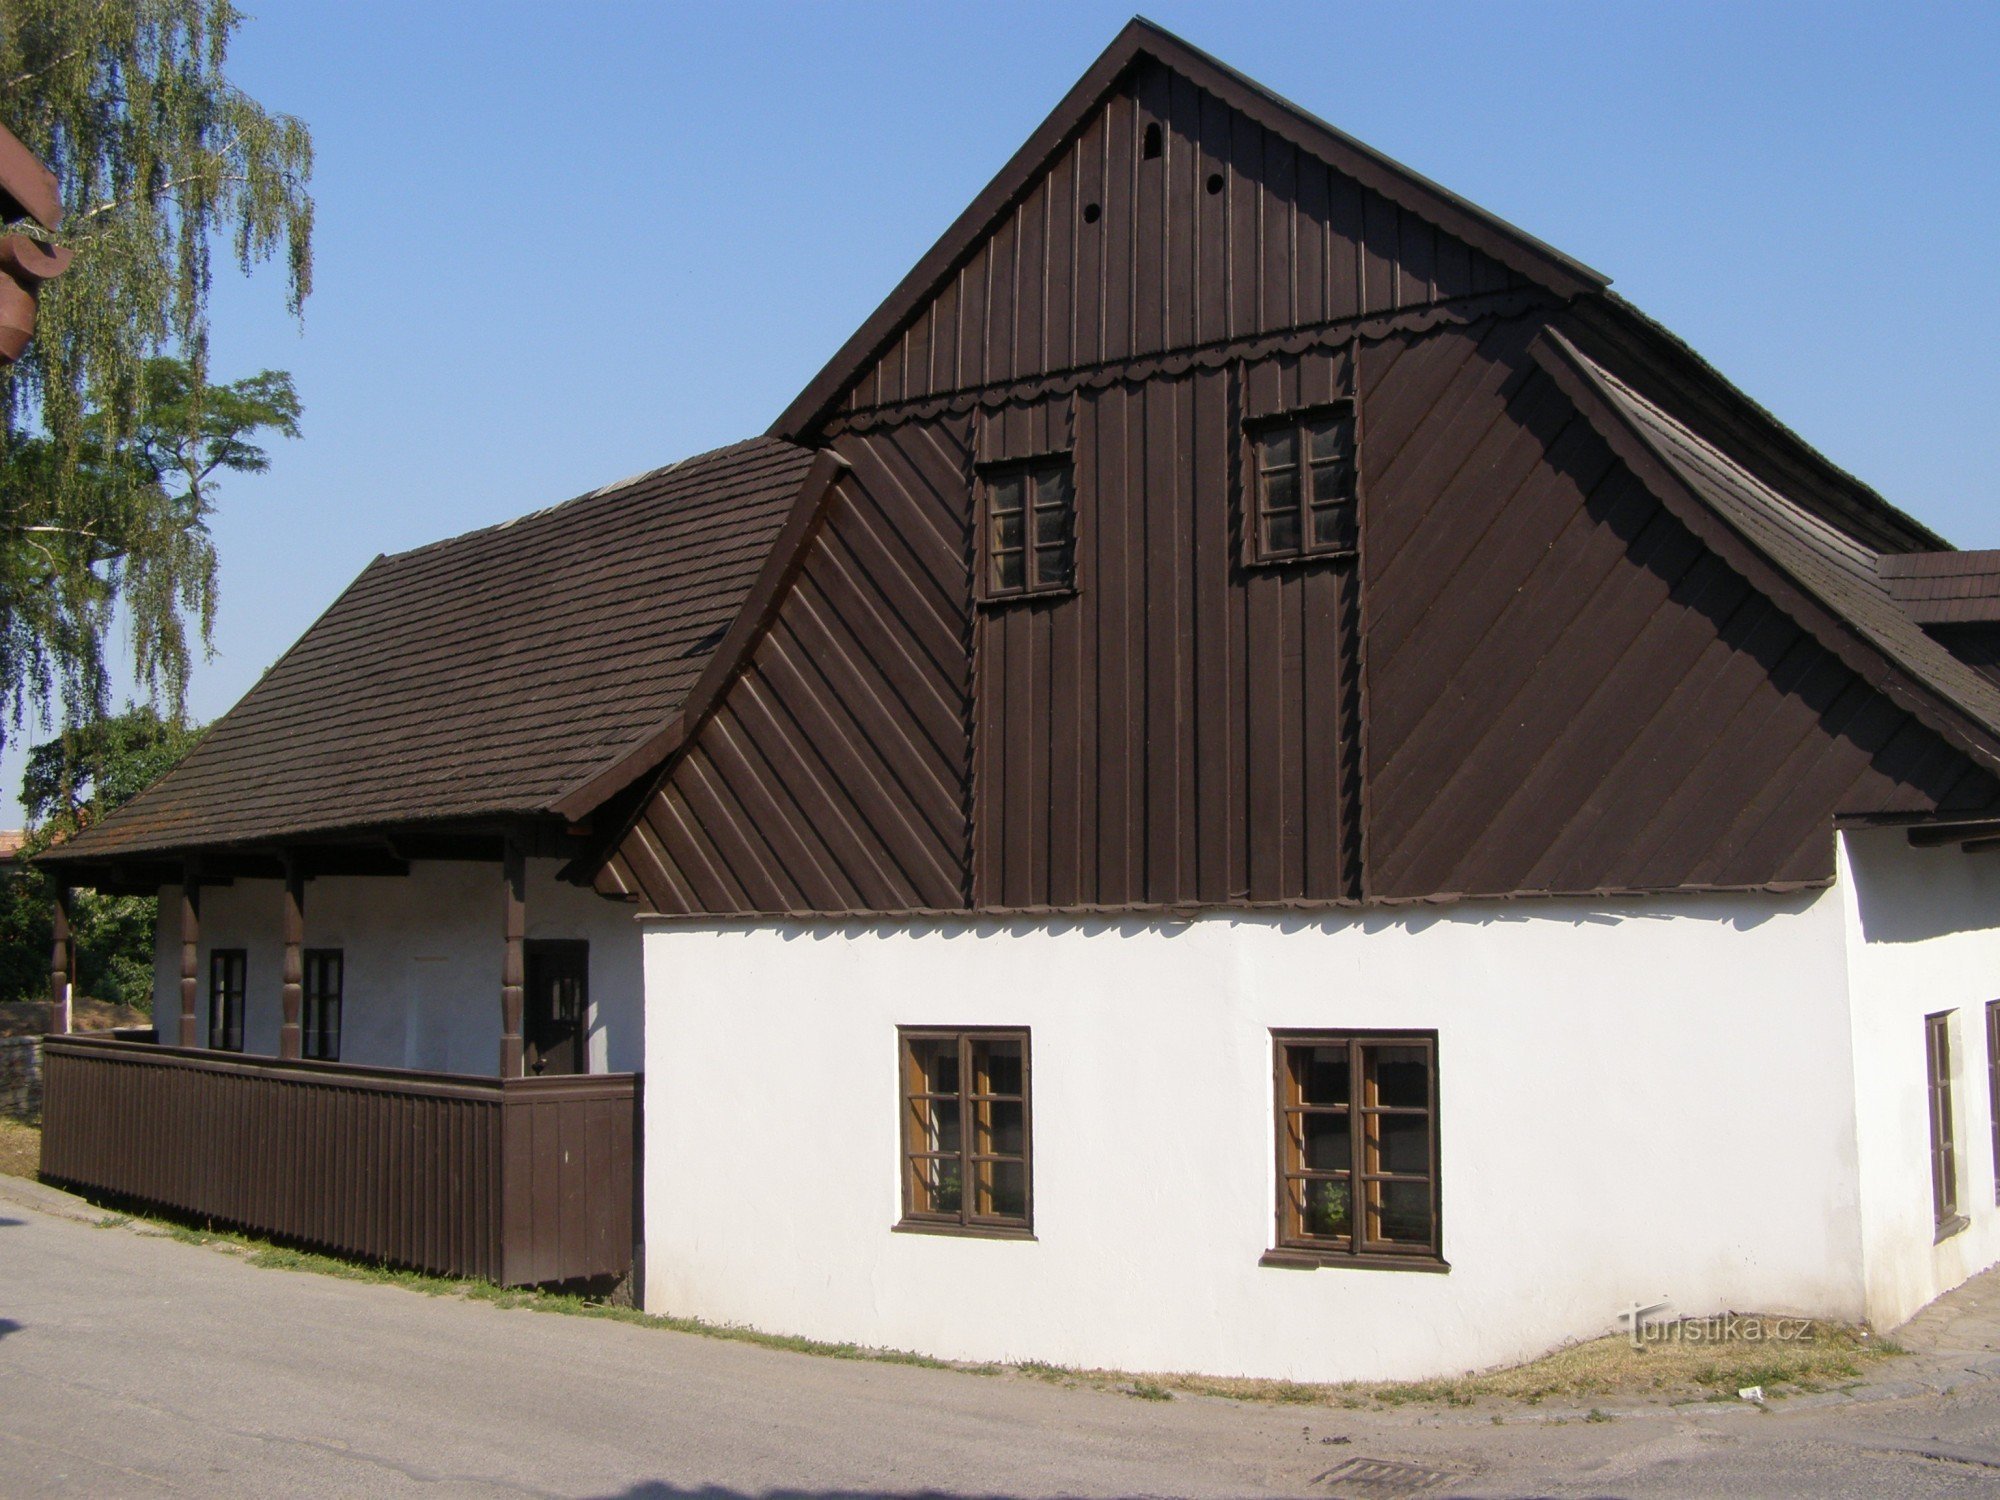 Dobruška - FLVěk (Heka) szülőhelye